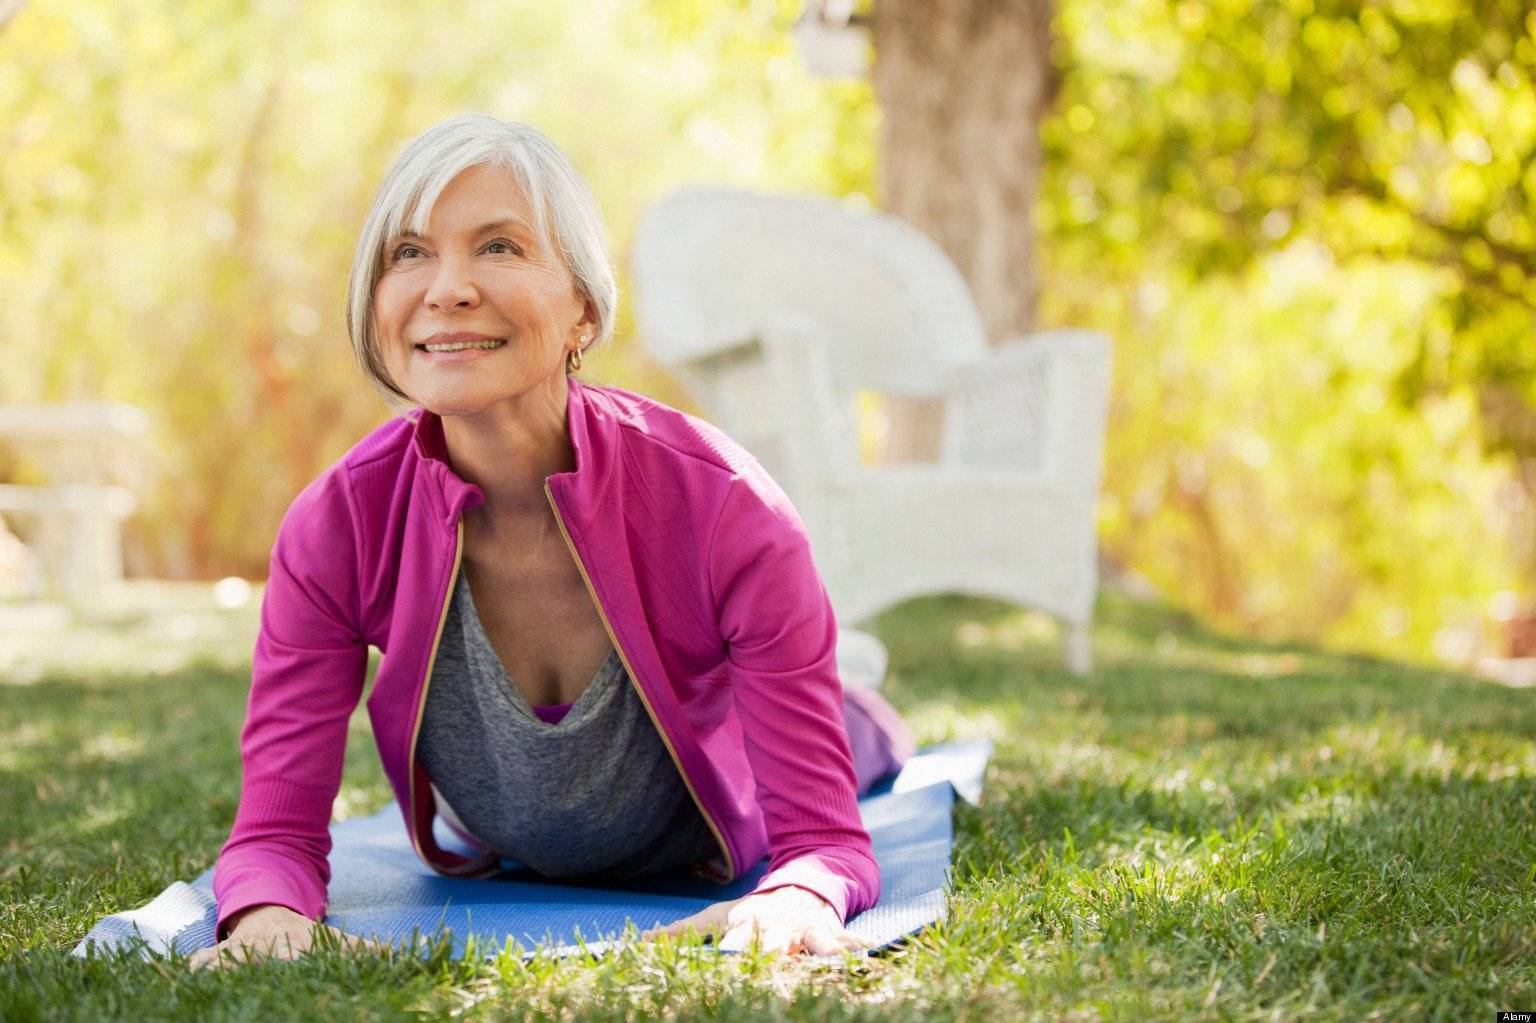 Йога для пожилых людей: комплекс упражнений, рекомендации, видео